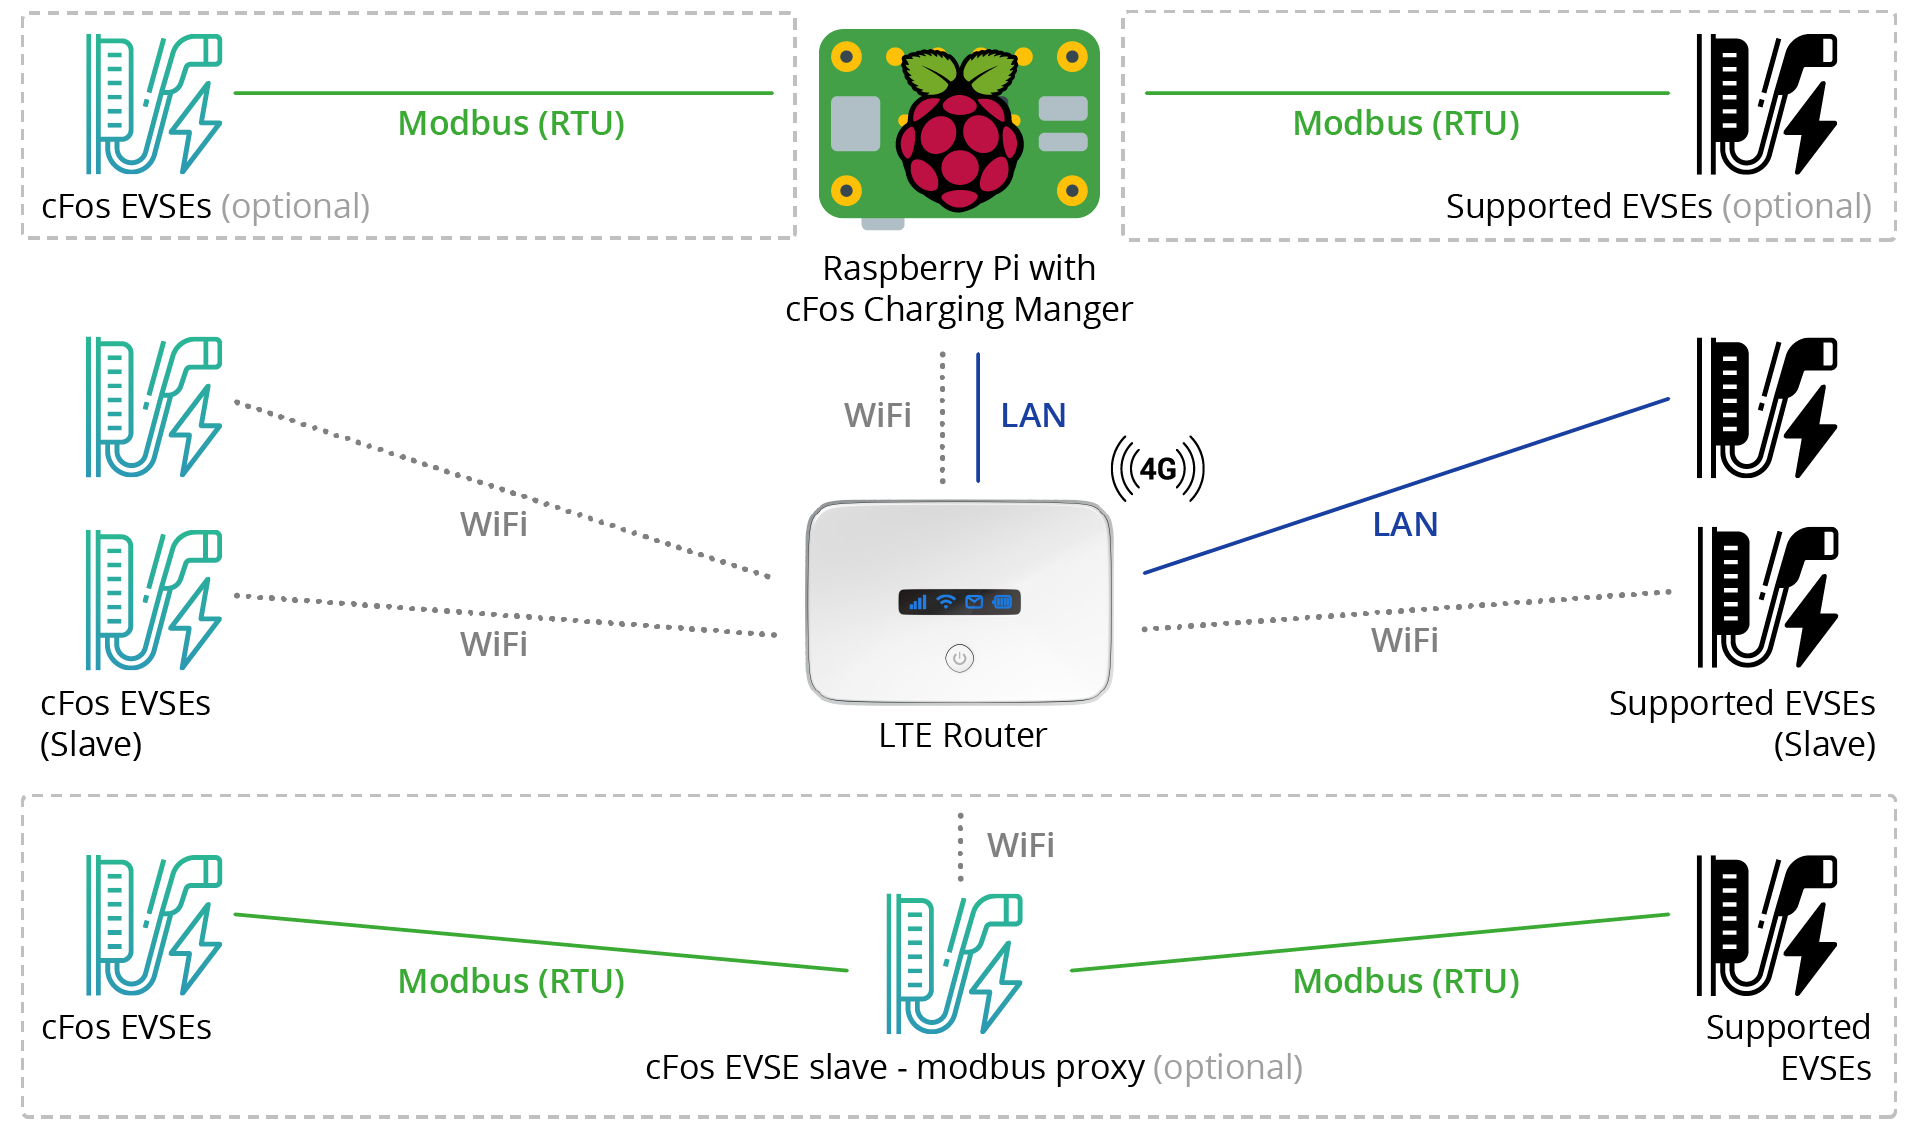 Configuração de exemplo gráfico com router LTE